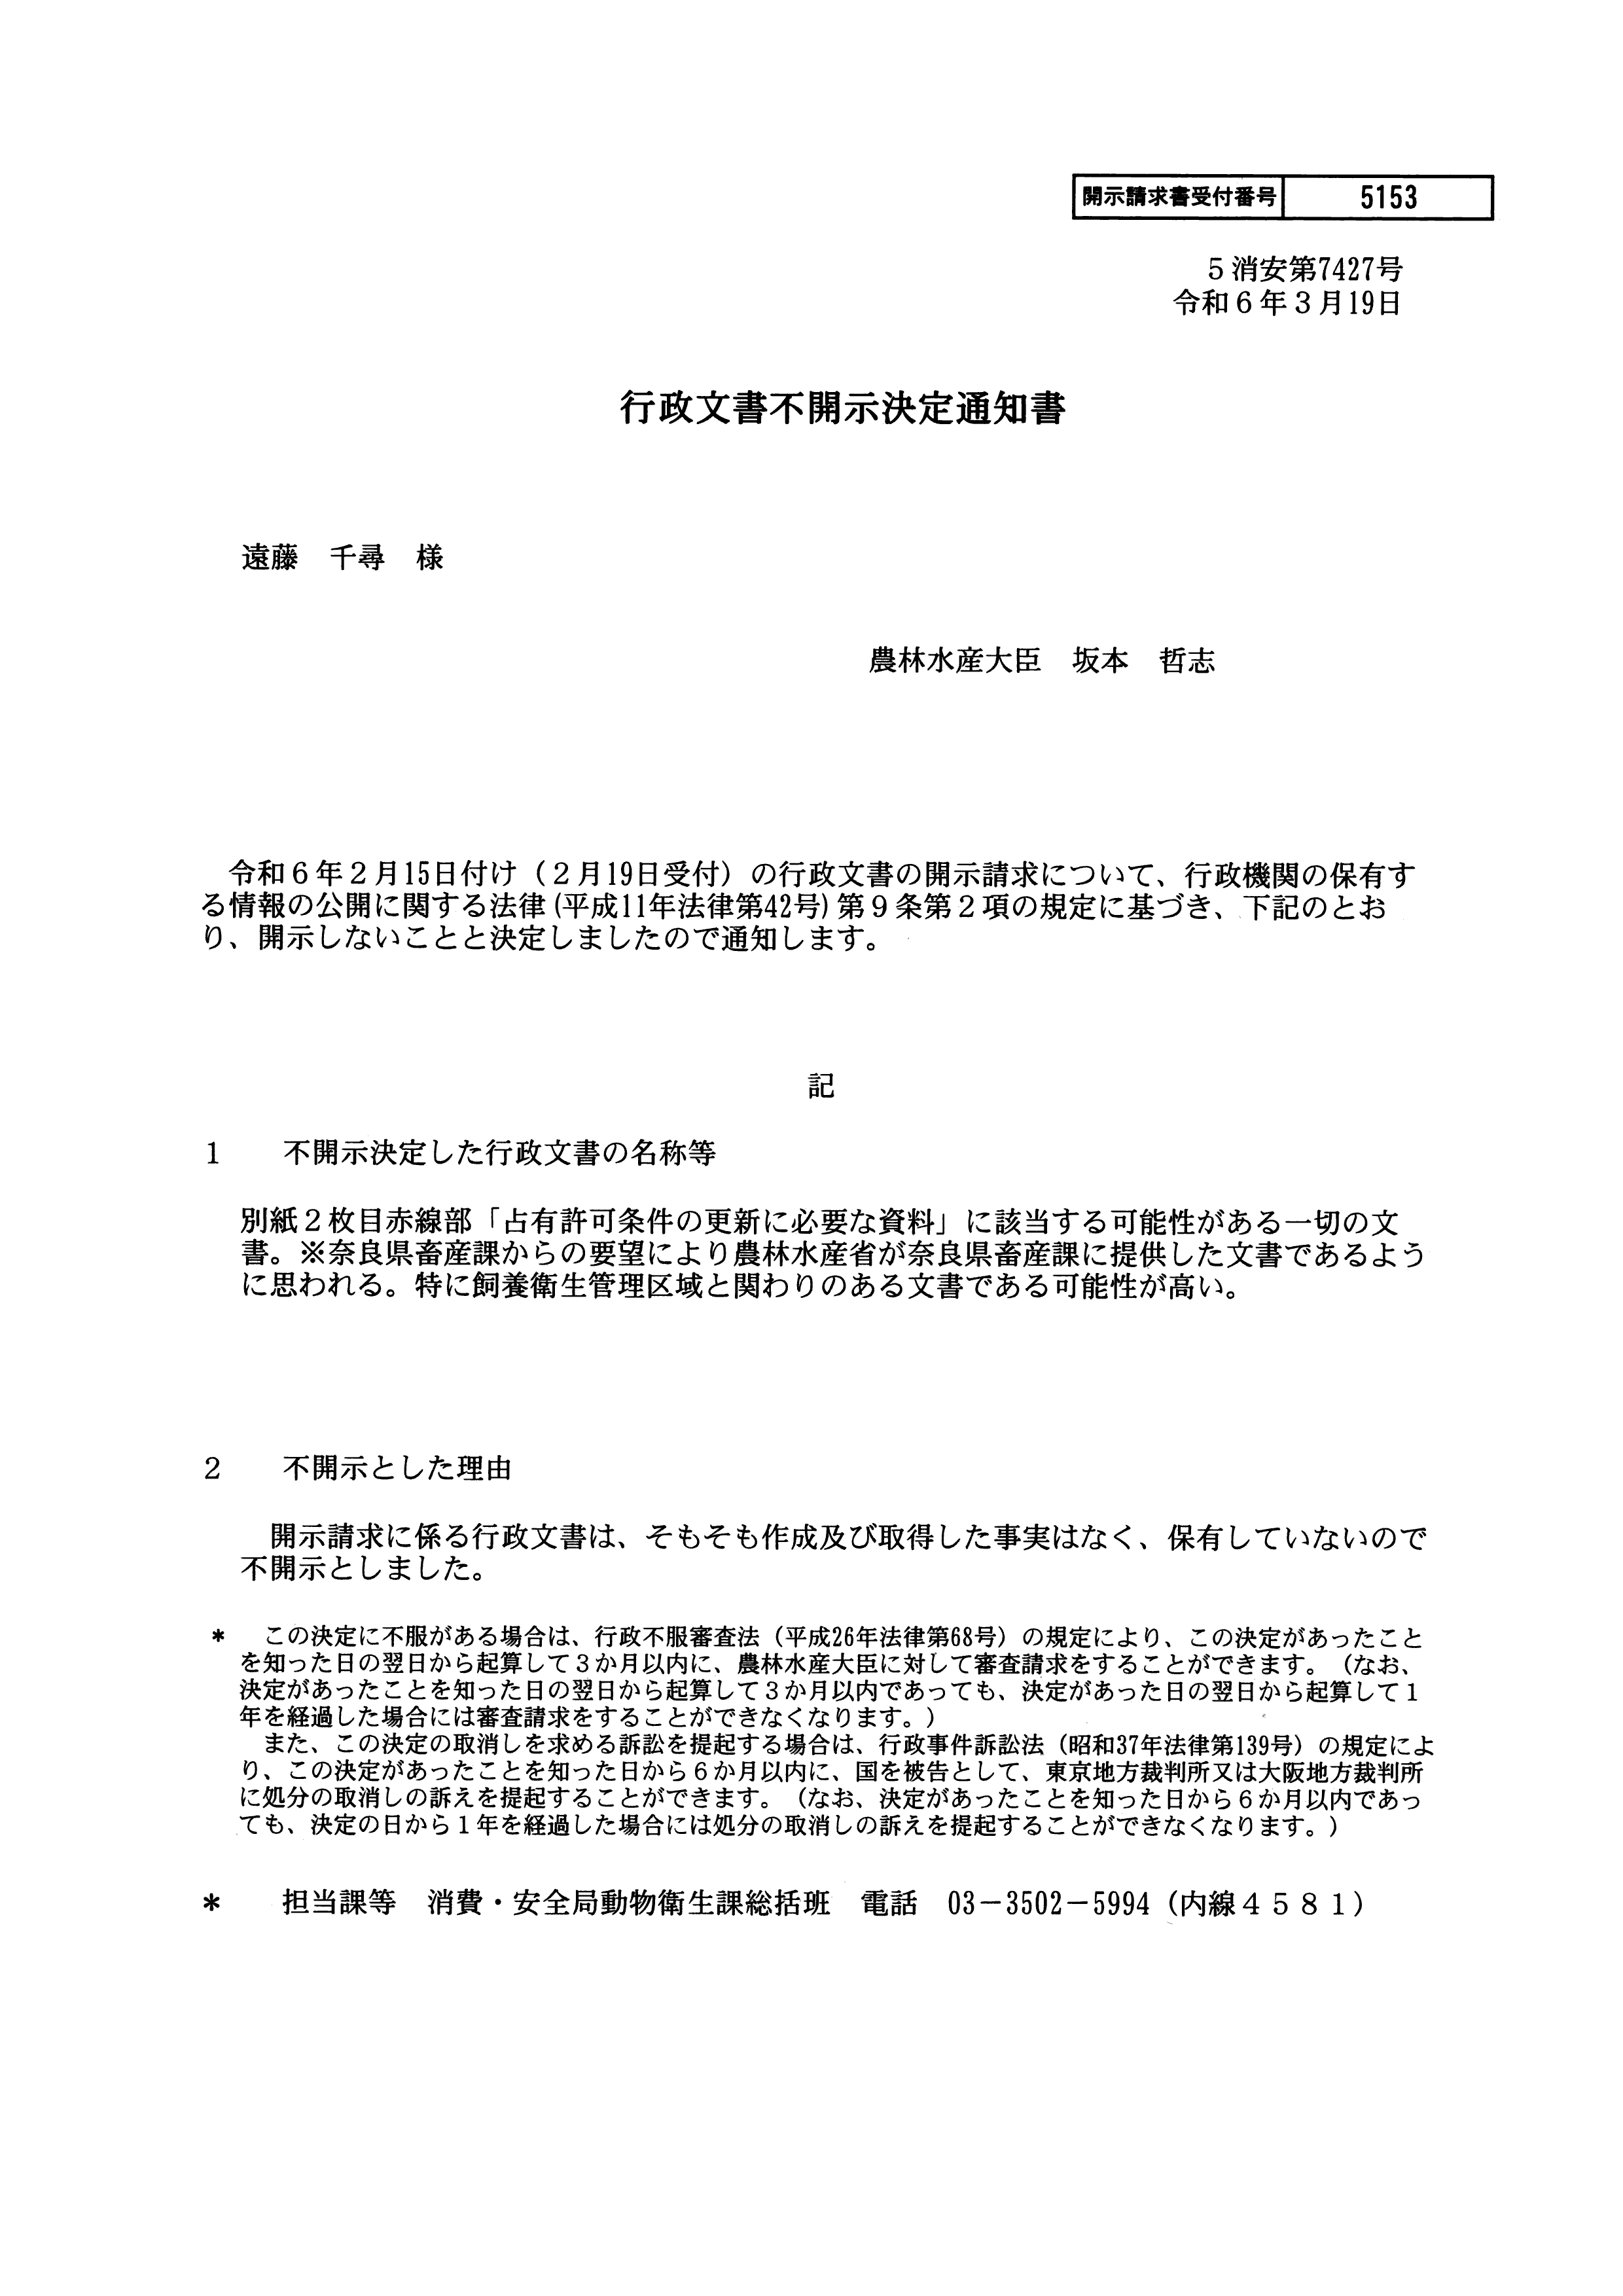 令和6(2024)年3月19日 行政文書不開示（不存在）決定通知書（農林水産省）-01